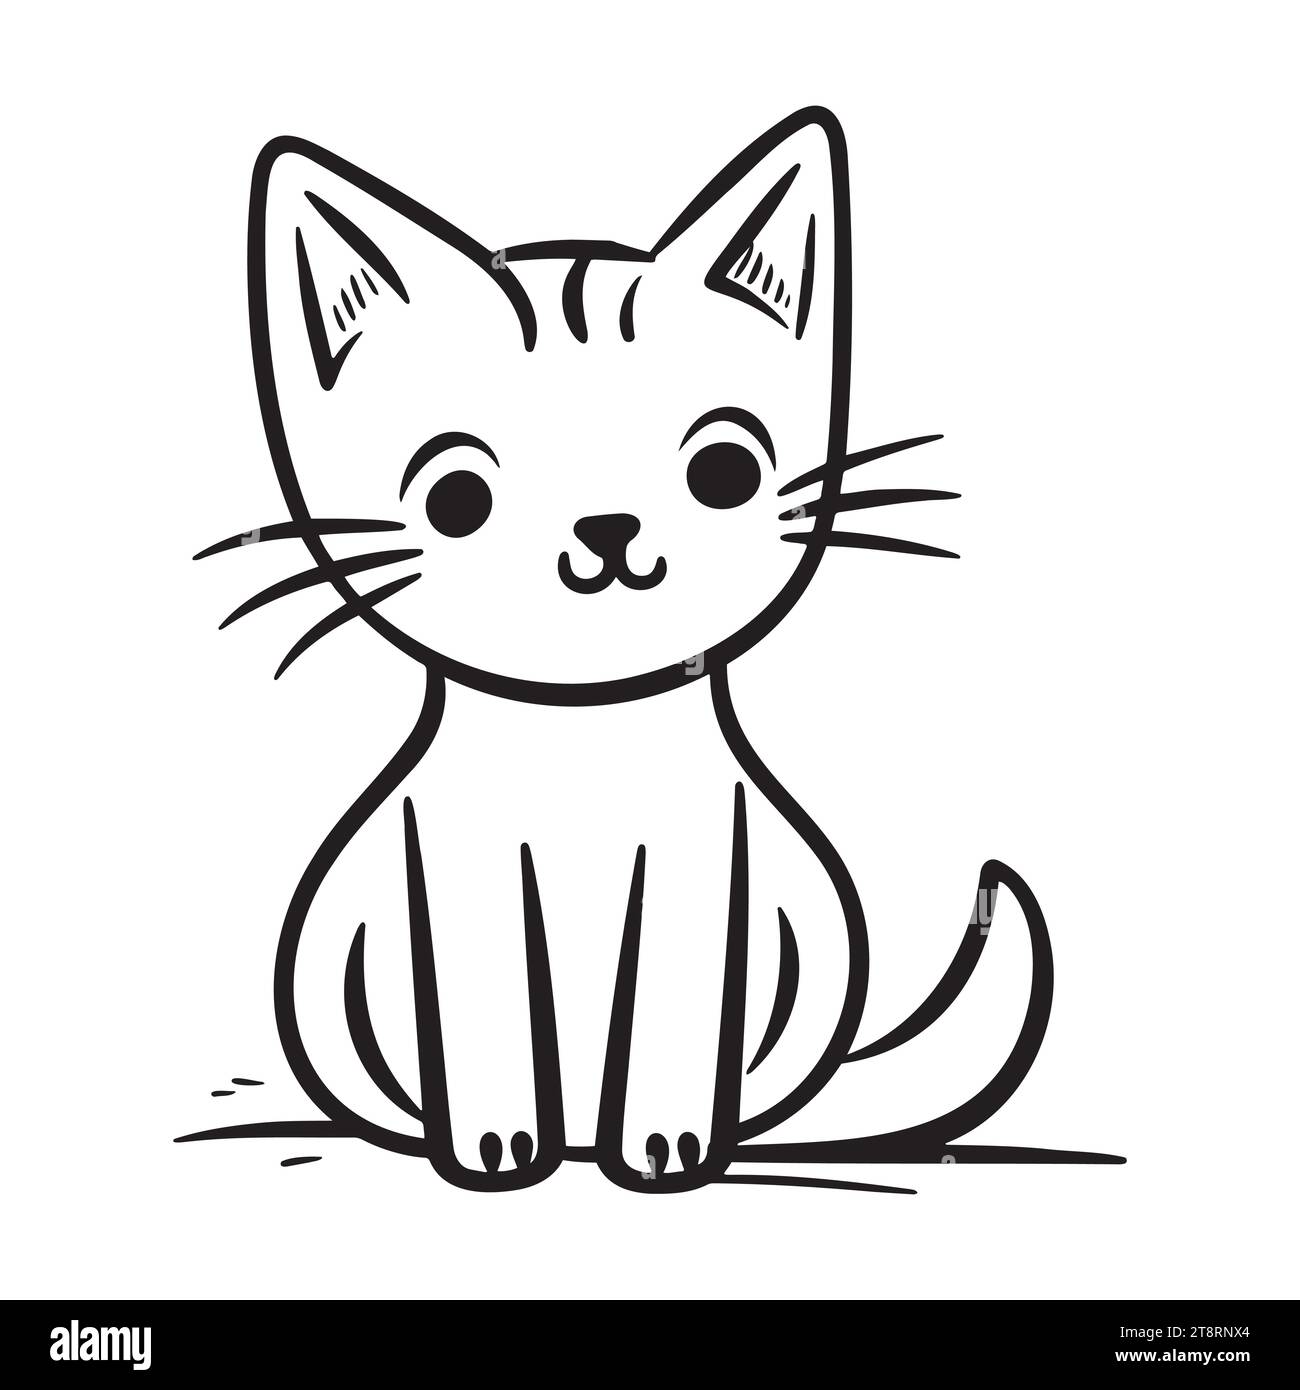 Vektor Hand gezeichnet süße Katze. Isolierte Abbildung auf weißem Hintergrund Stock Vektor